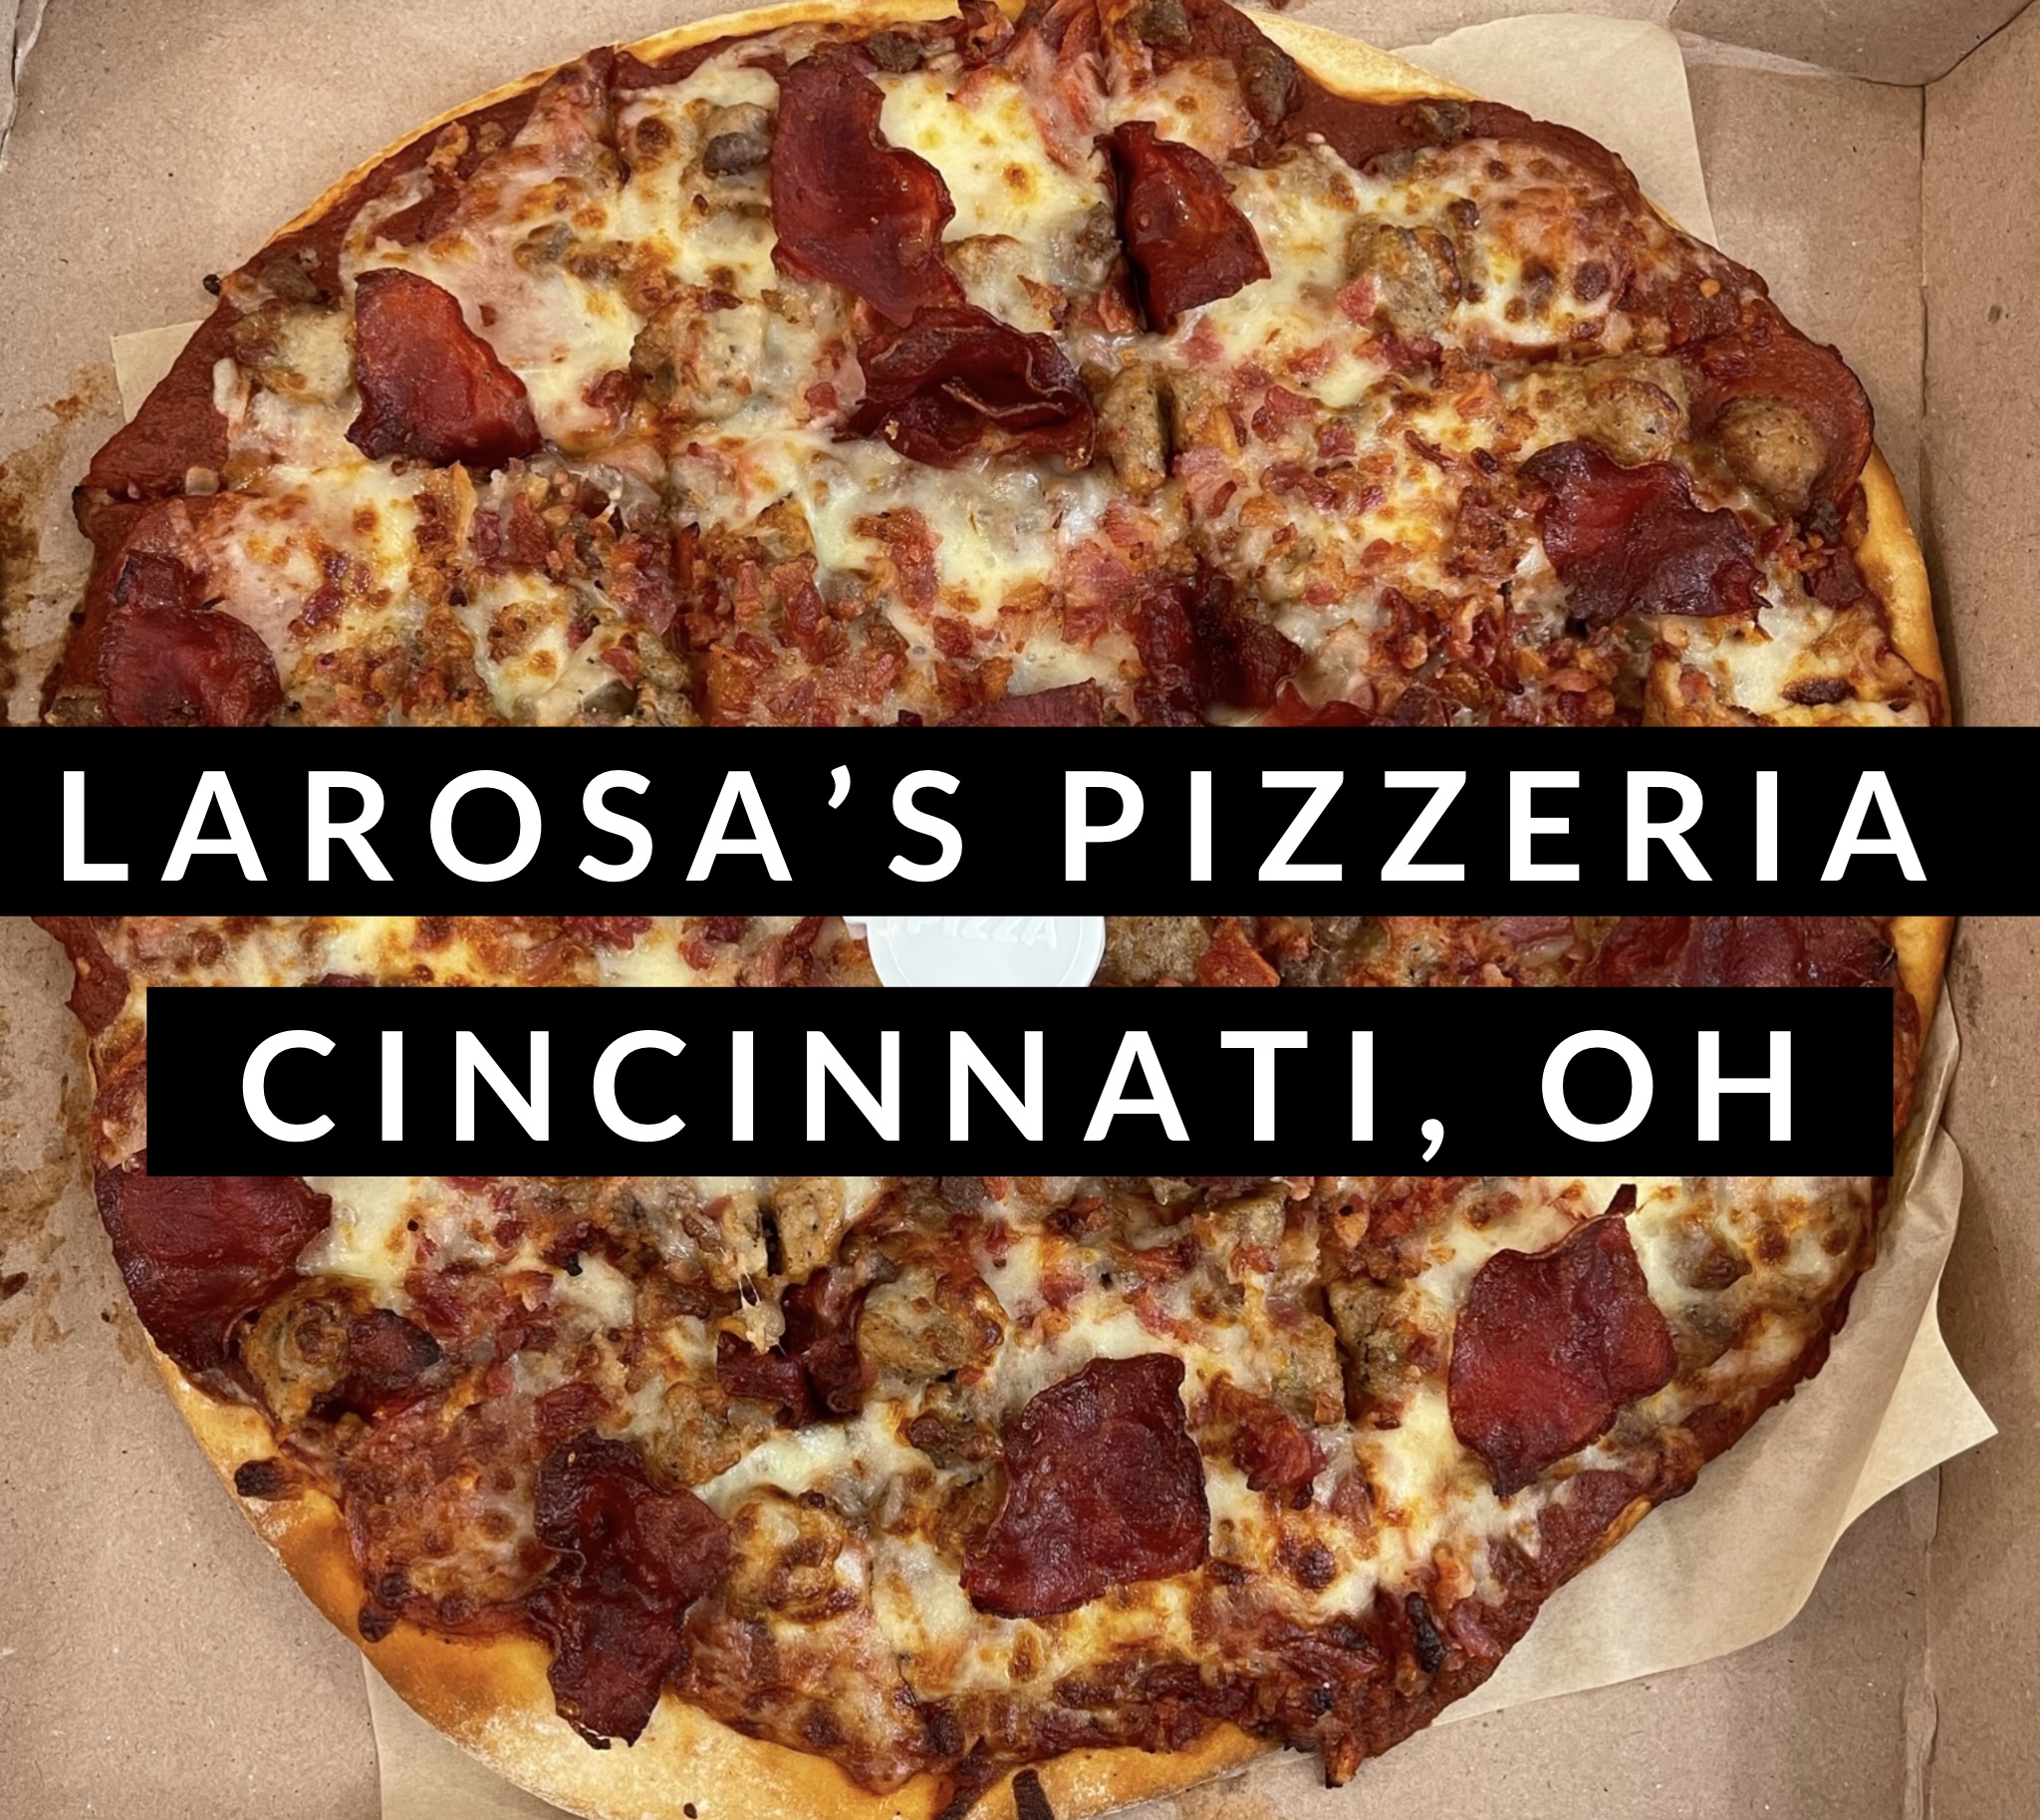 LaRosa's Pizzeria in Cincinnati, Ohio